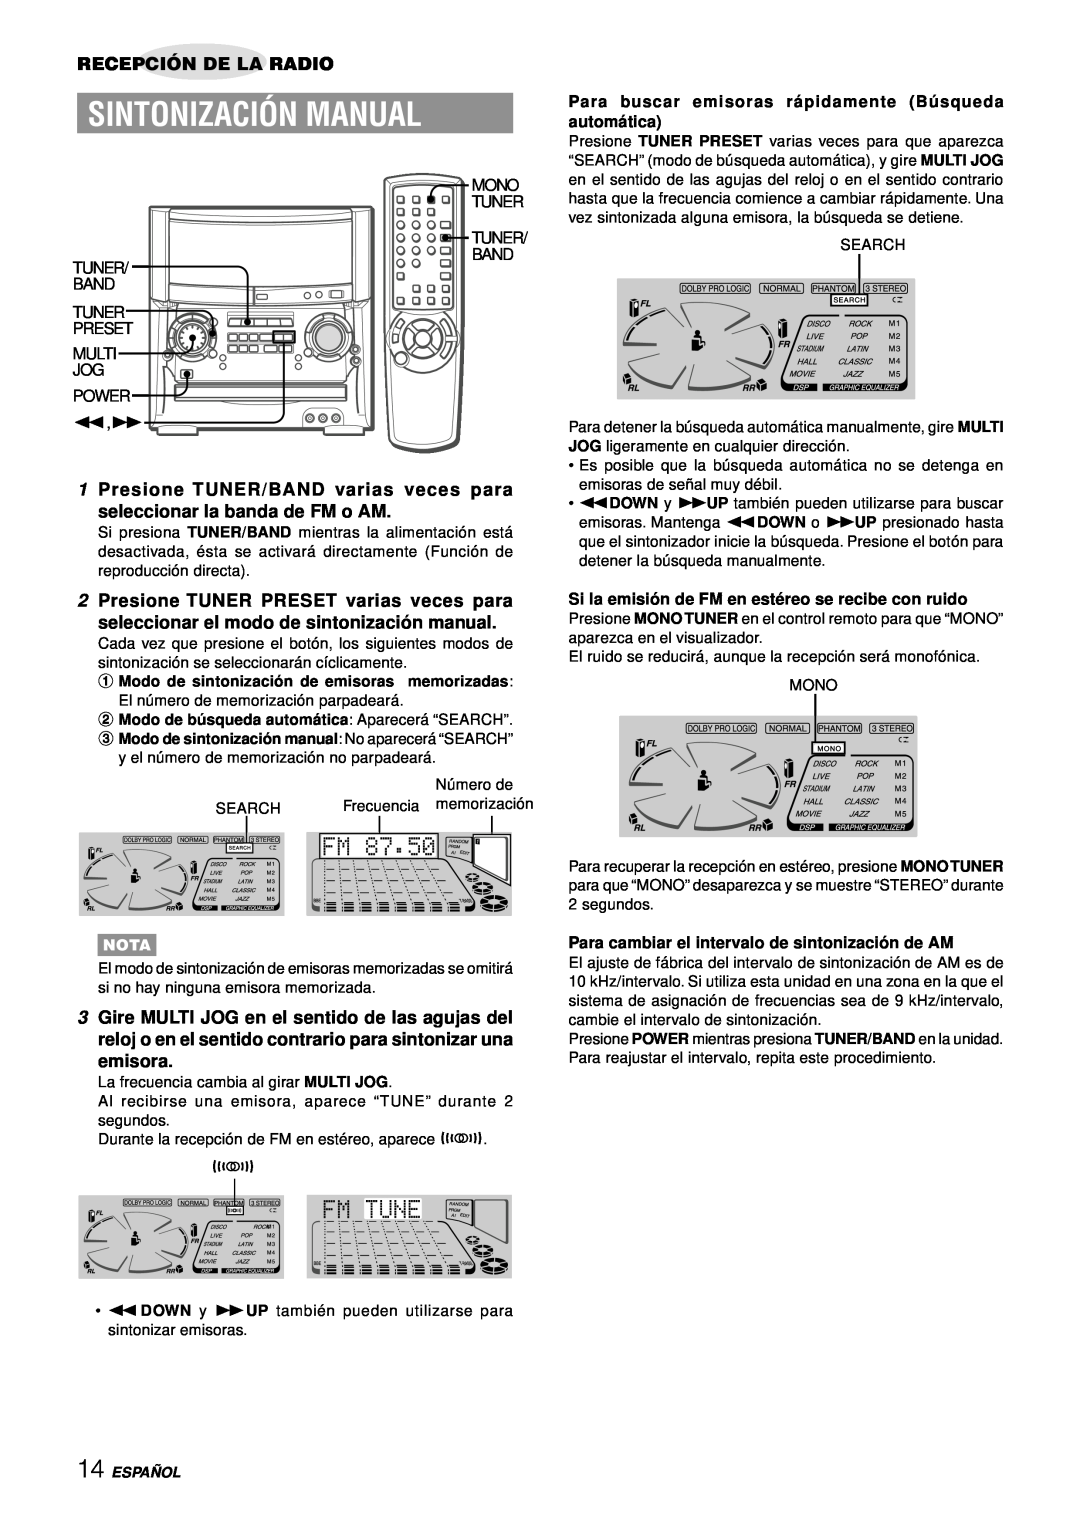 Aiwa XH-A1000 Sintonización Manual, Recepción De La Radio, emisora, Para cambiar el intervalo de sintonizació n de AM 